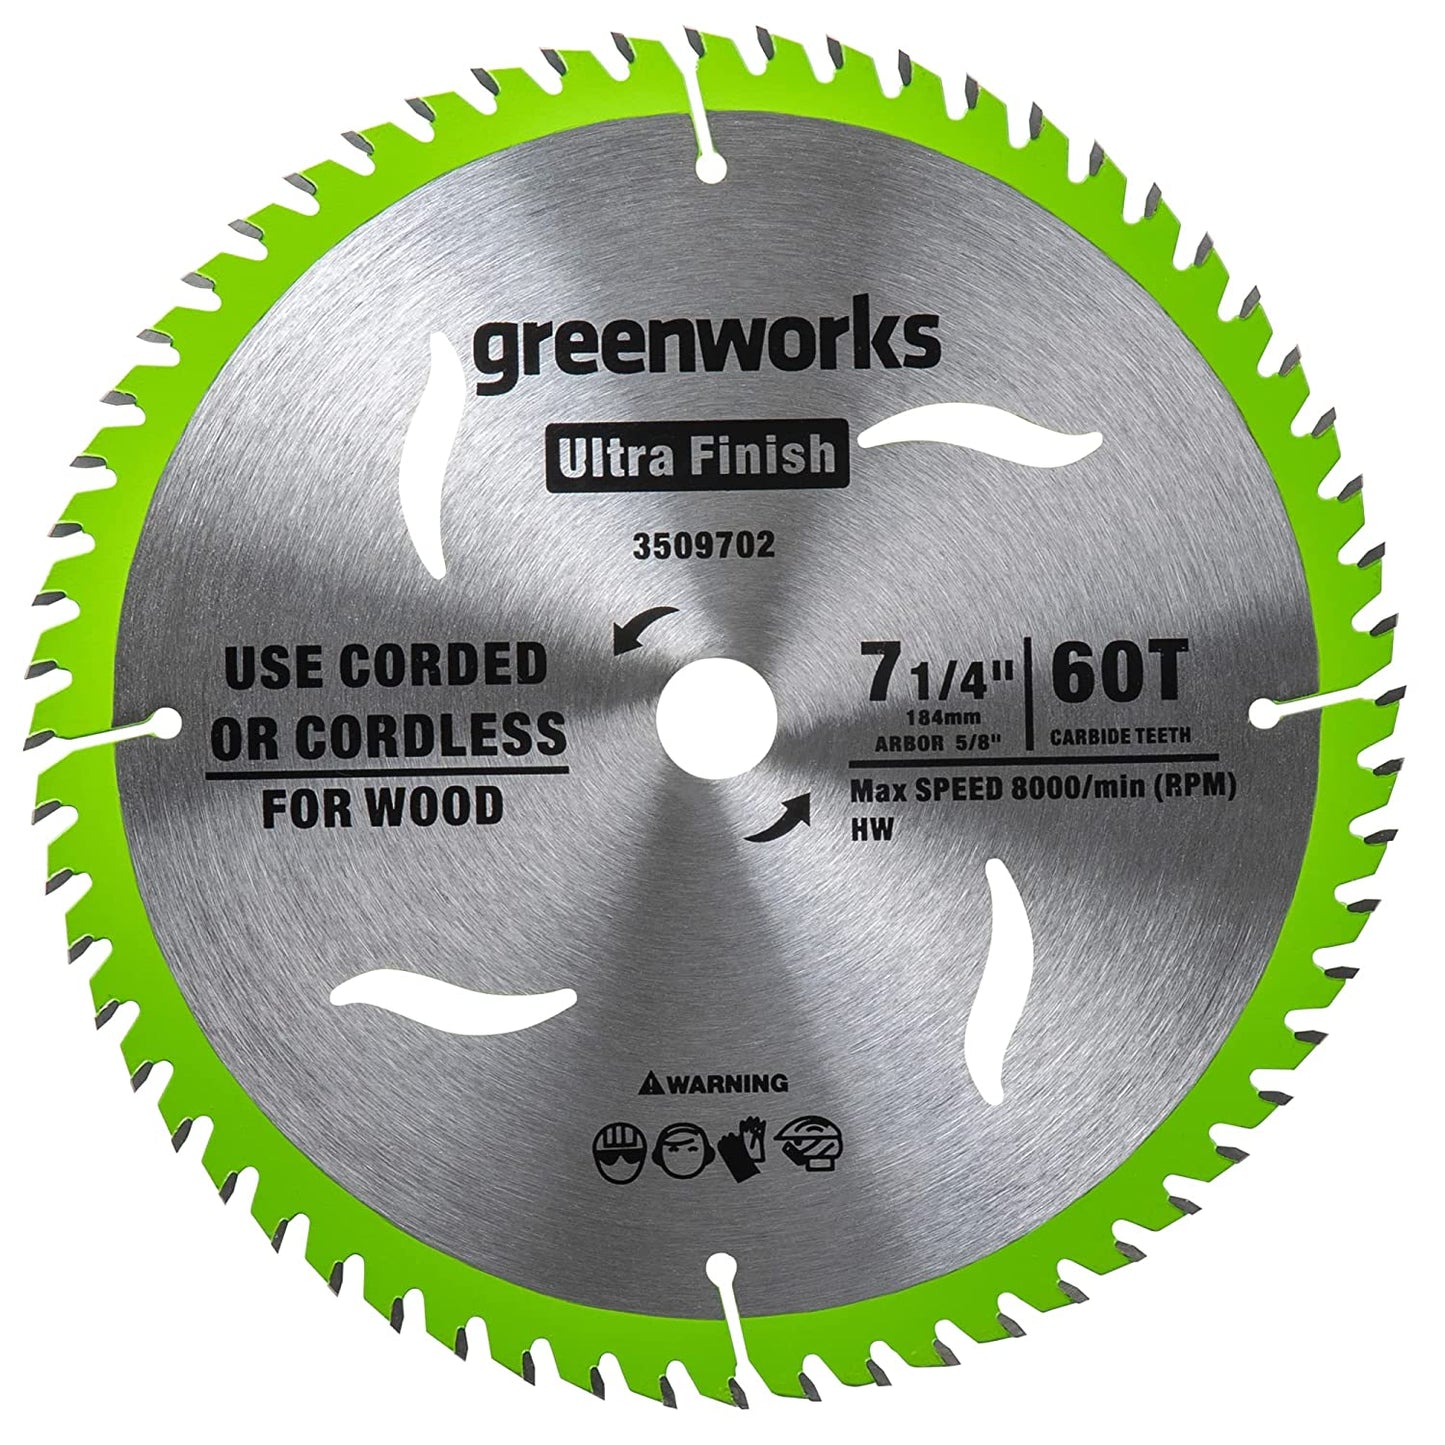 Greenworks 24V 7-1/4 " 60T Circular Saw Blades